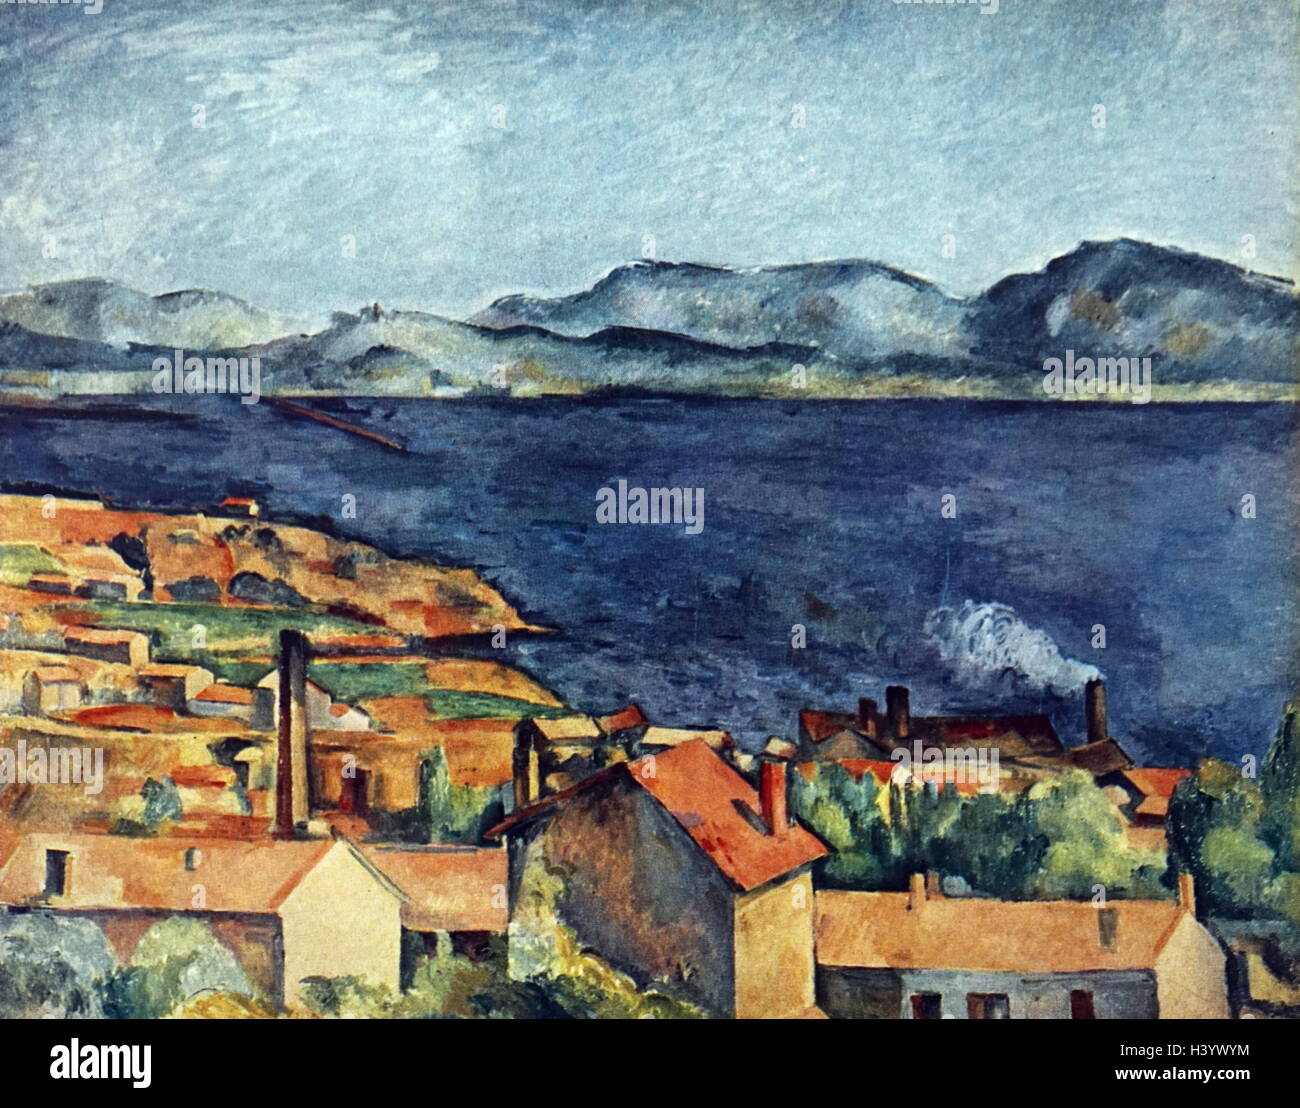 Gemälde mit dem Titel "Die Bucht von L'Estaque' von Paul Cézanne (1839-1906), ein französischer Künstler und post-impressionistischen Maler. Vom 19. Jahrhundert Stockfoto